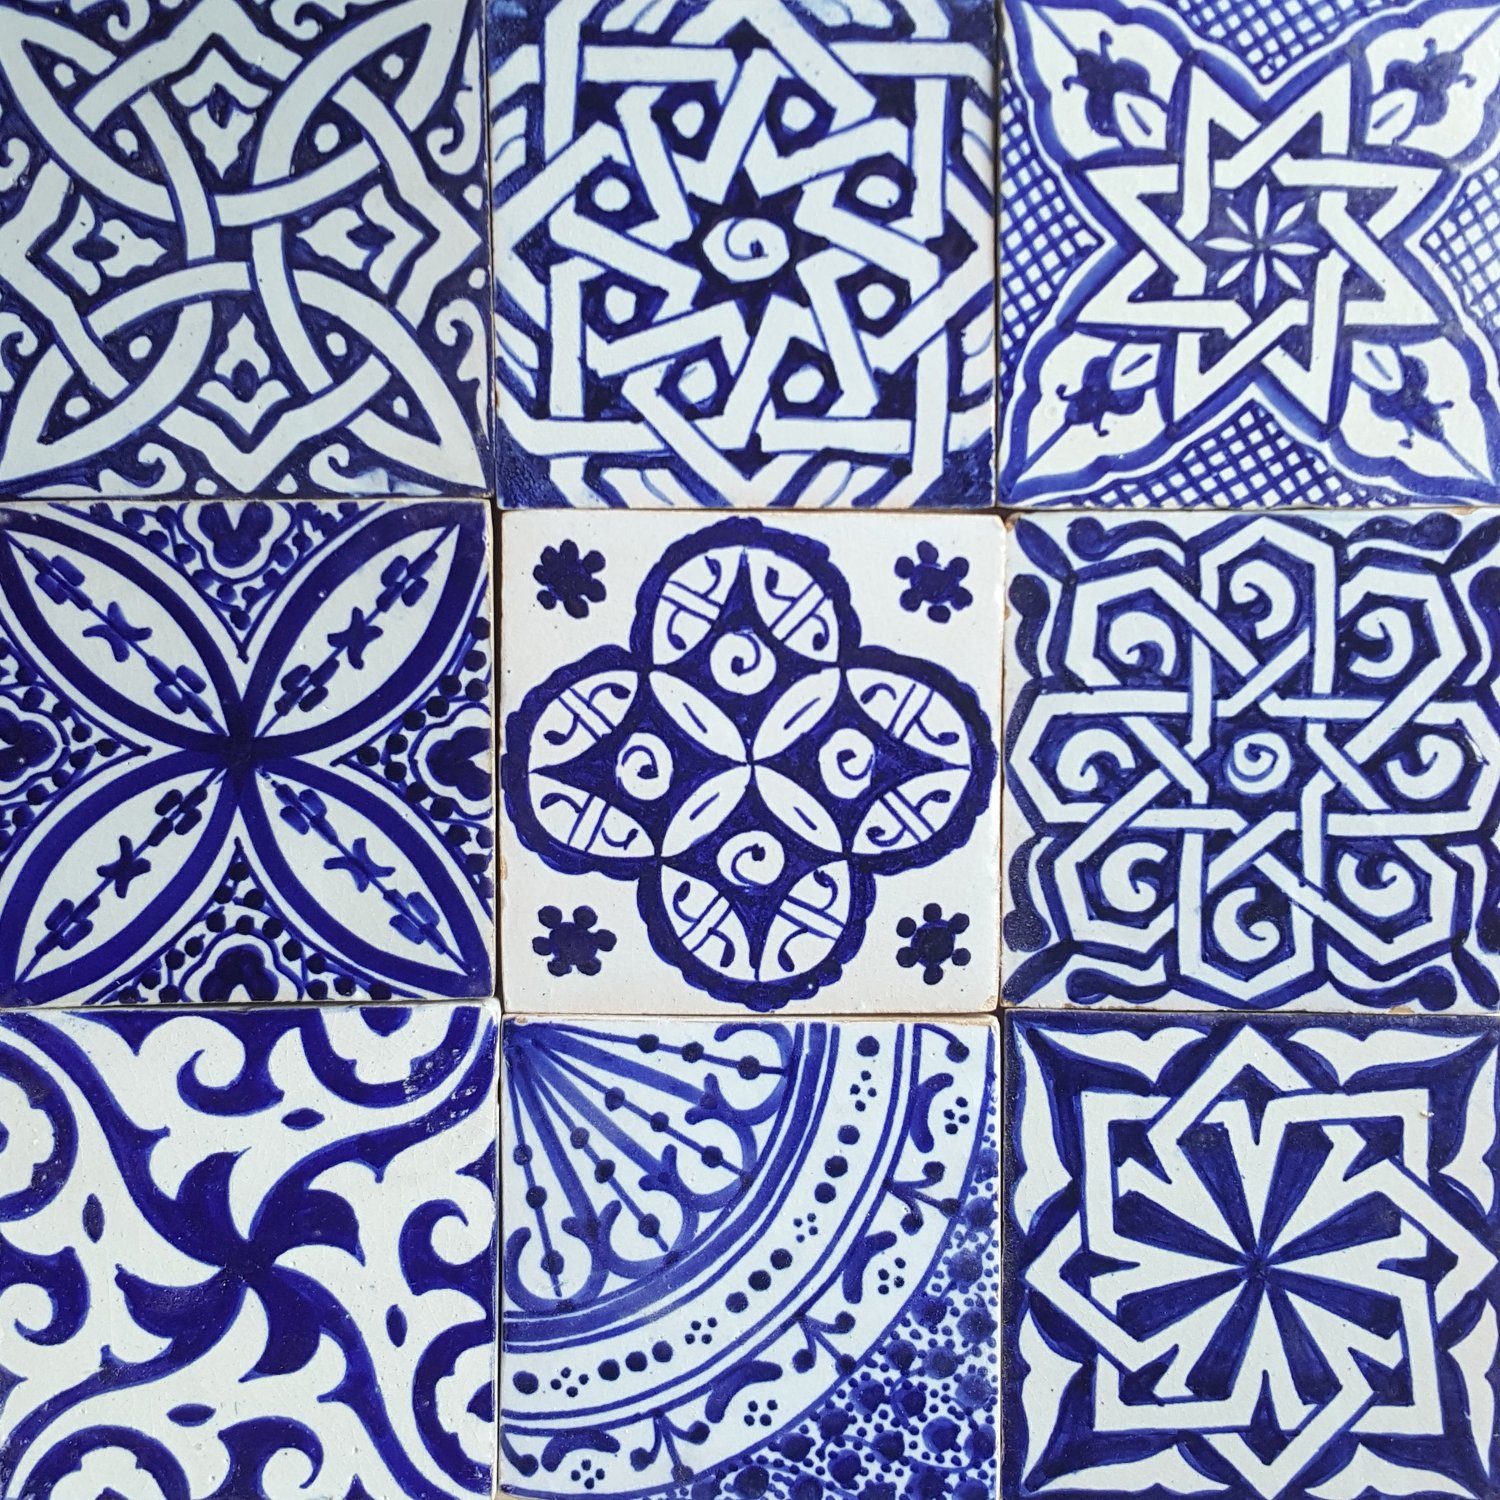 Casa Moro Wandfliese Orientalische Fliesen Mix 10x10 cm blau weiß 9er Packung, Blau und Weiß, Kunsthandwerk aus Marokko, Wandfliesen für schöne Küche Dusche Badezimmer, HBF8400, handbemalte marokkanische Fliesen Patchwork | Fliesen